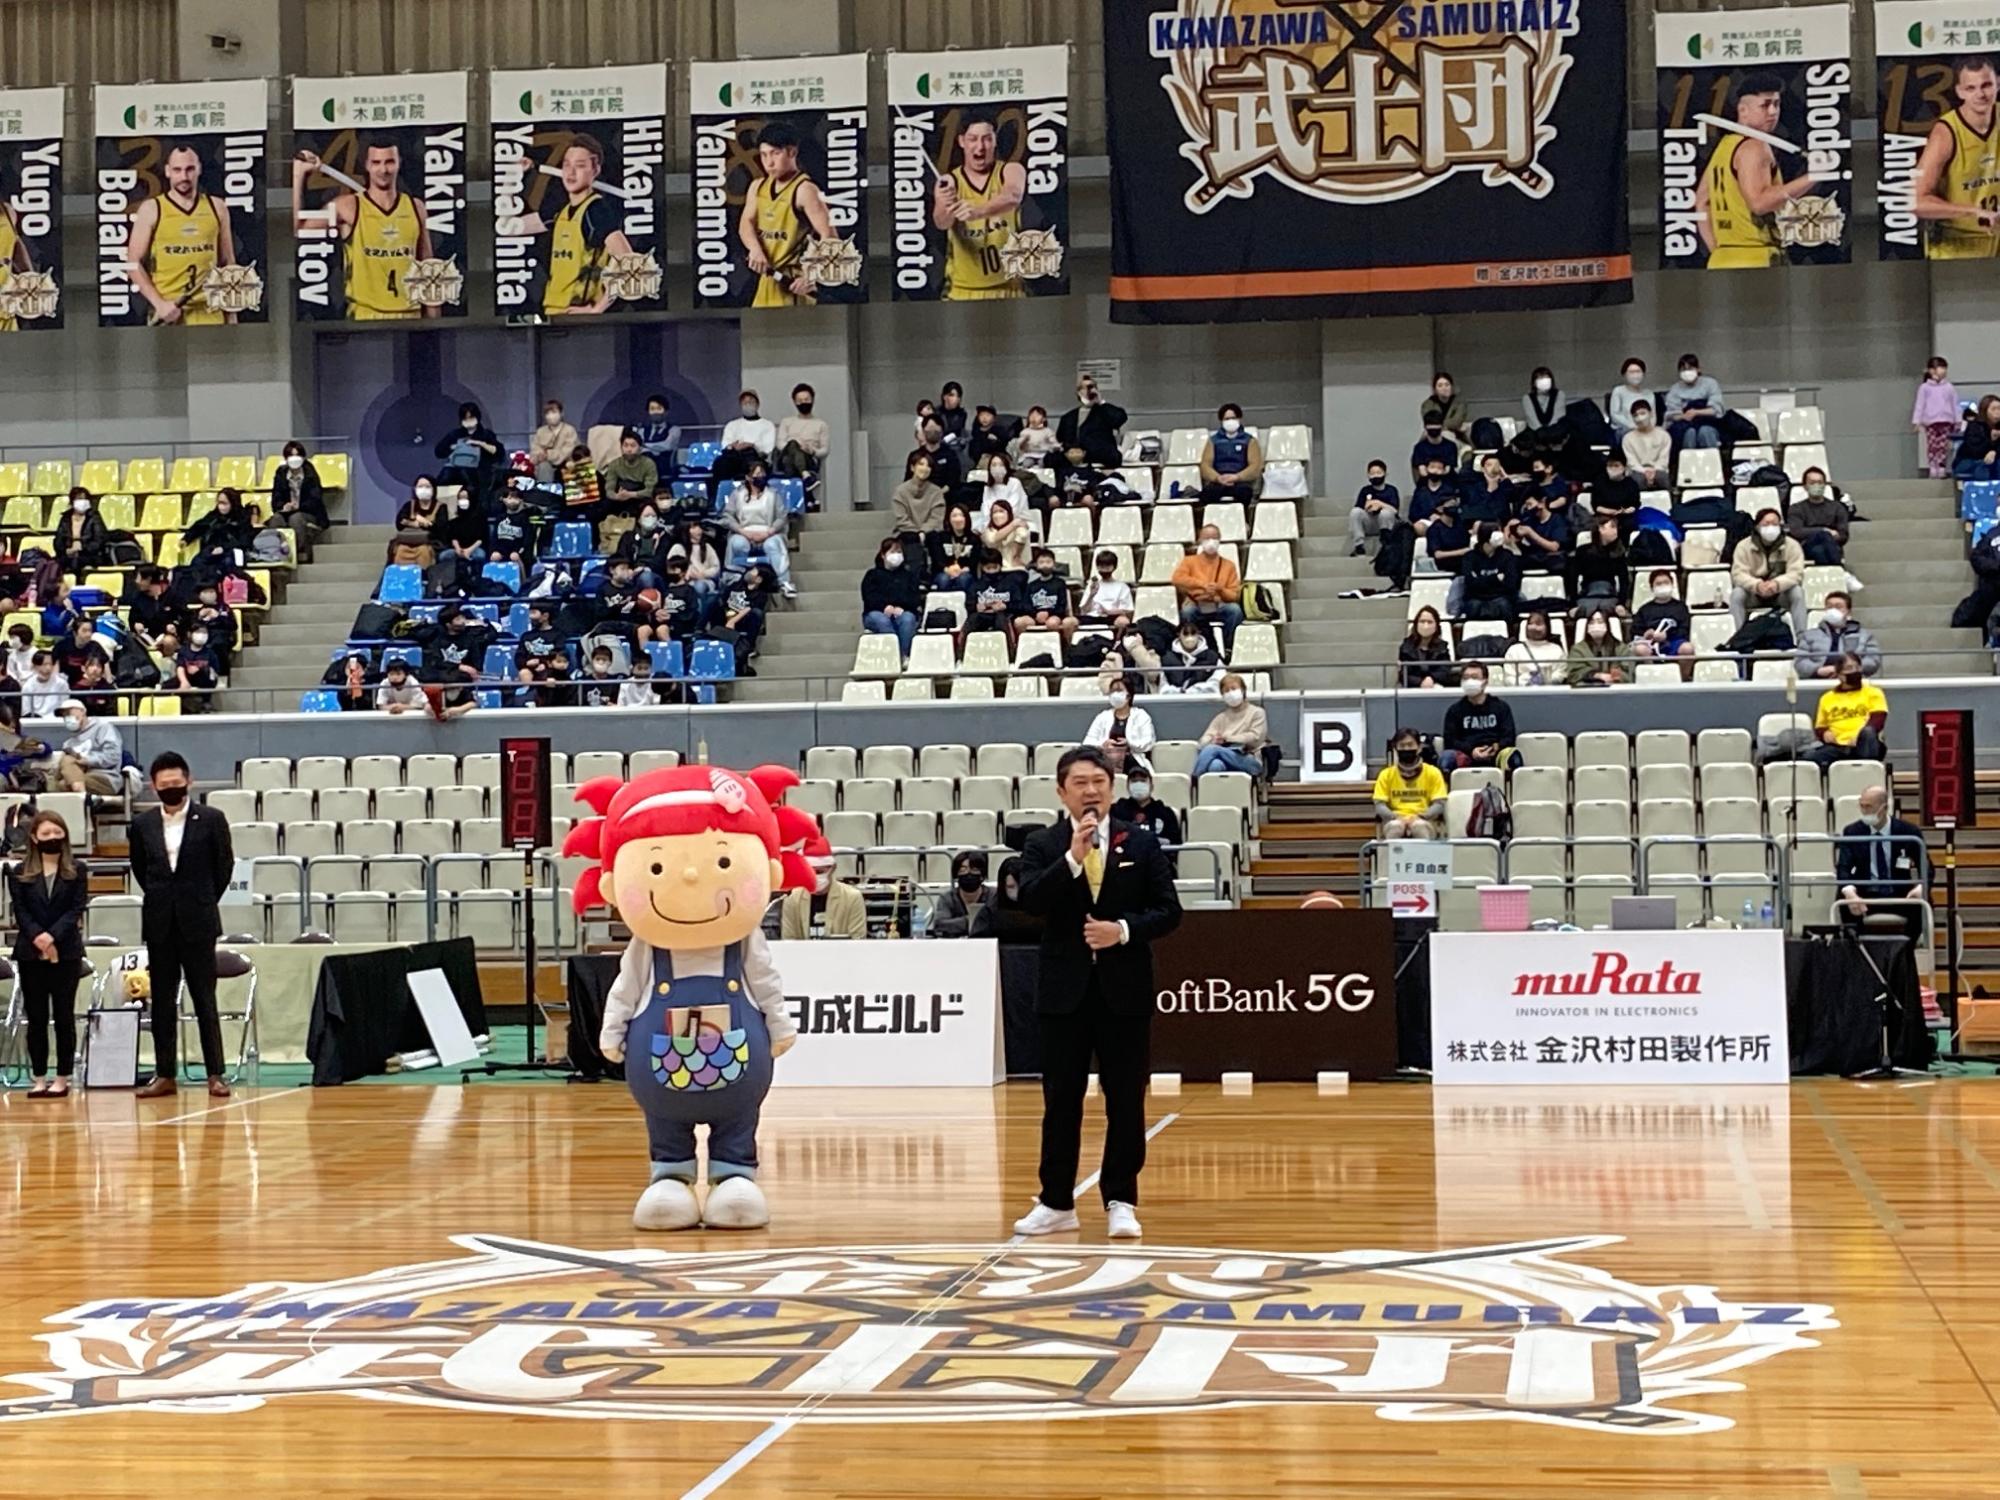 バスケットボールB3リーグ金沢武士団VS八王子ビートレインズ戦が金沢市総合体育館で開催され、ホーム戦の市長として激励の挨拶をした様子